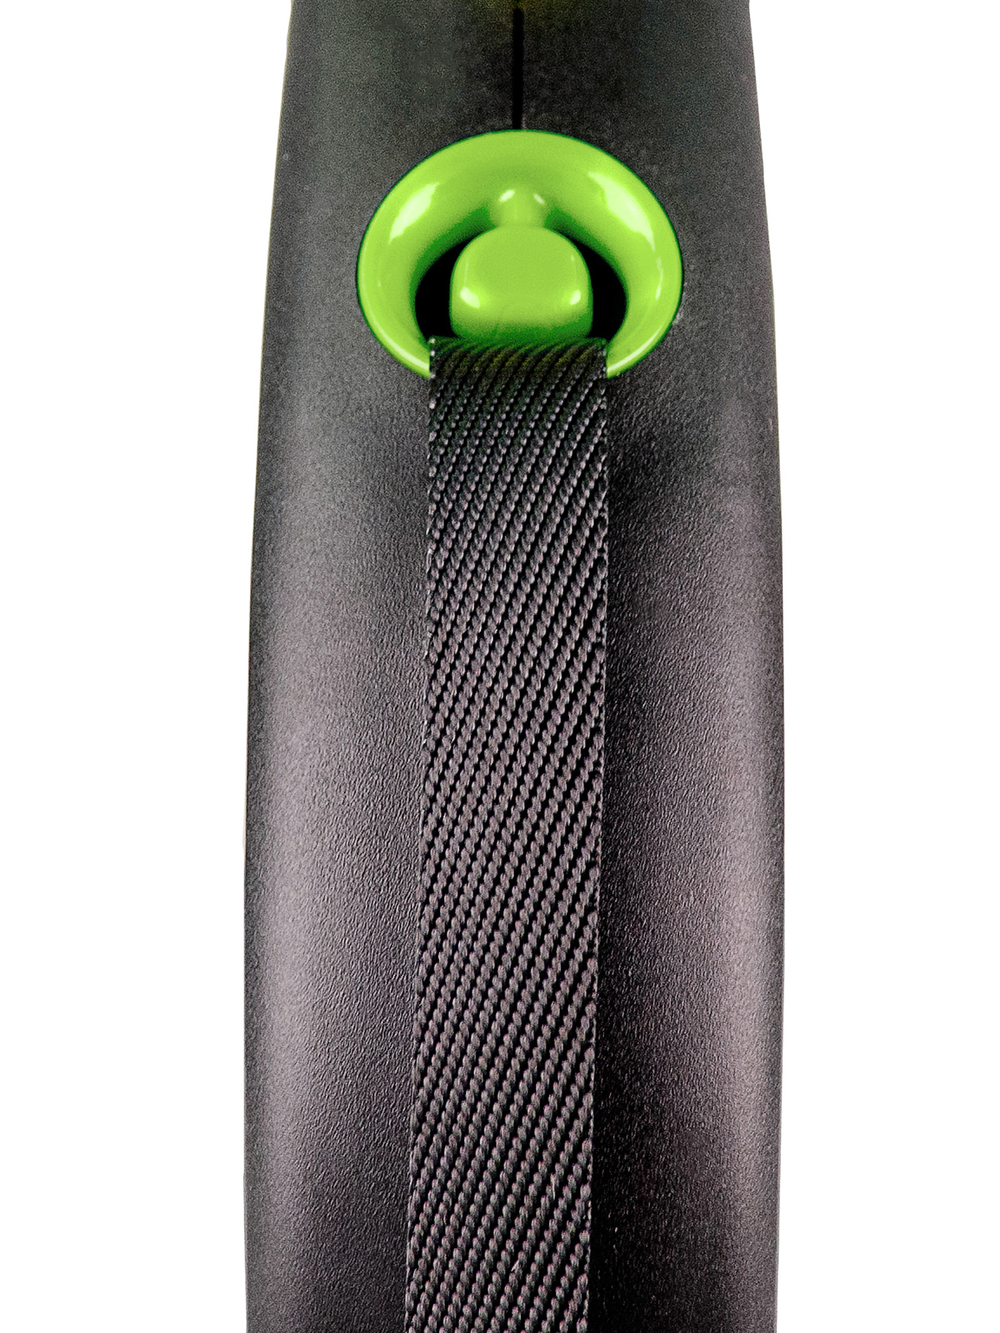 Flexi Black Design рулетка, S (до 15 кг), лента, черный/зеленый, 5м